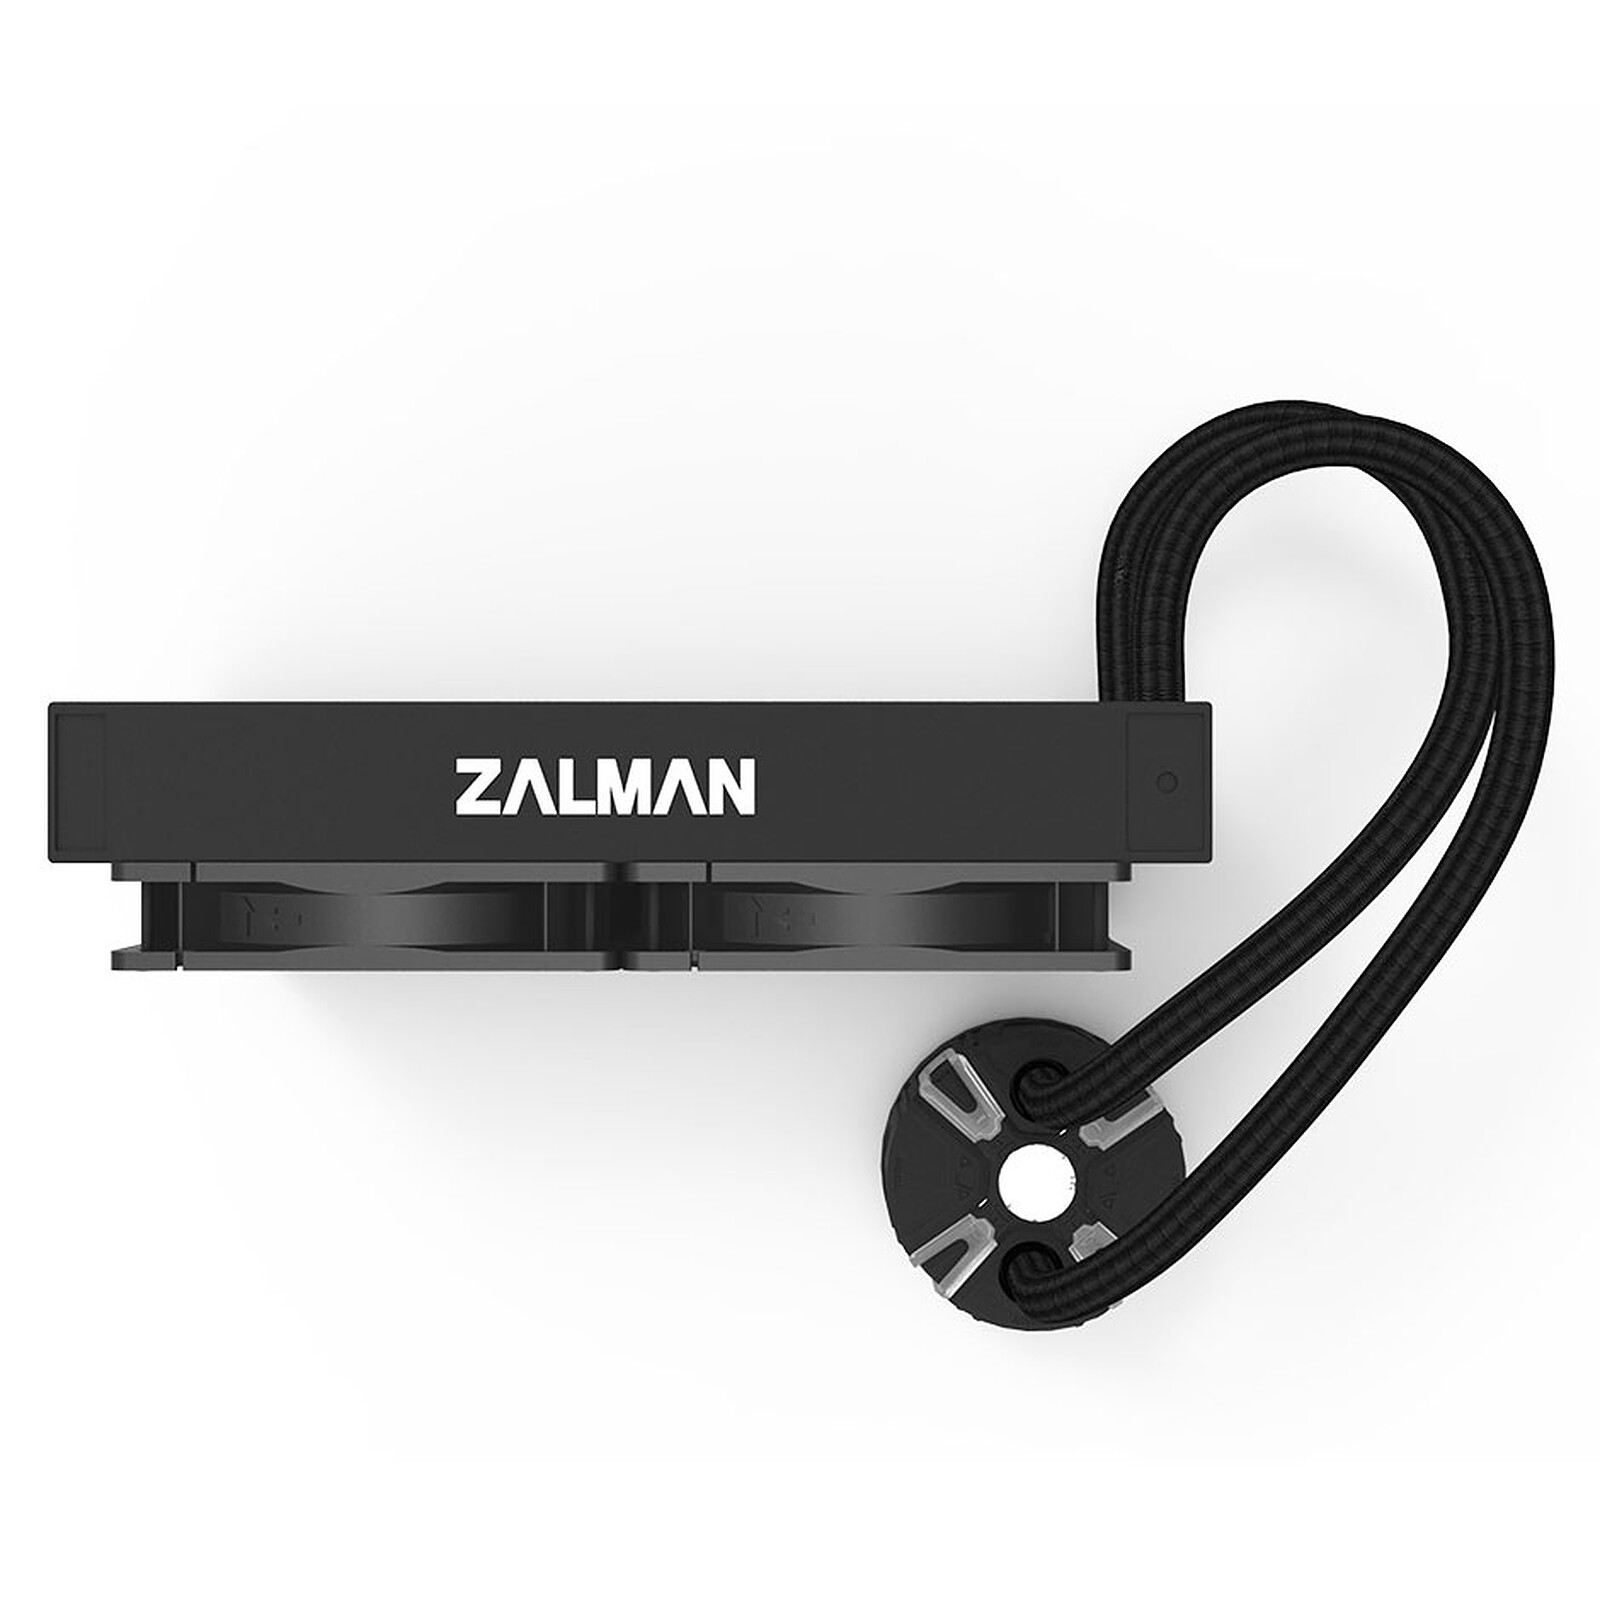 Zalman Reserator5 Z24 - black - CPU fan Zalman on LDLC